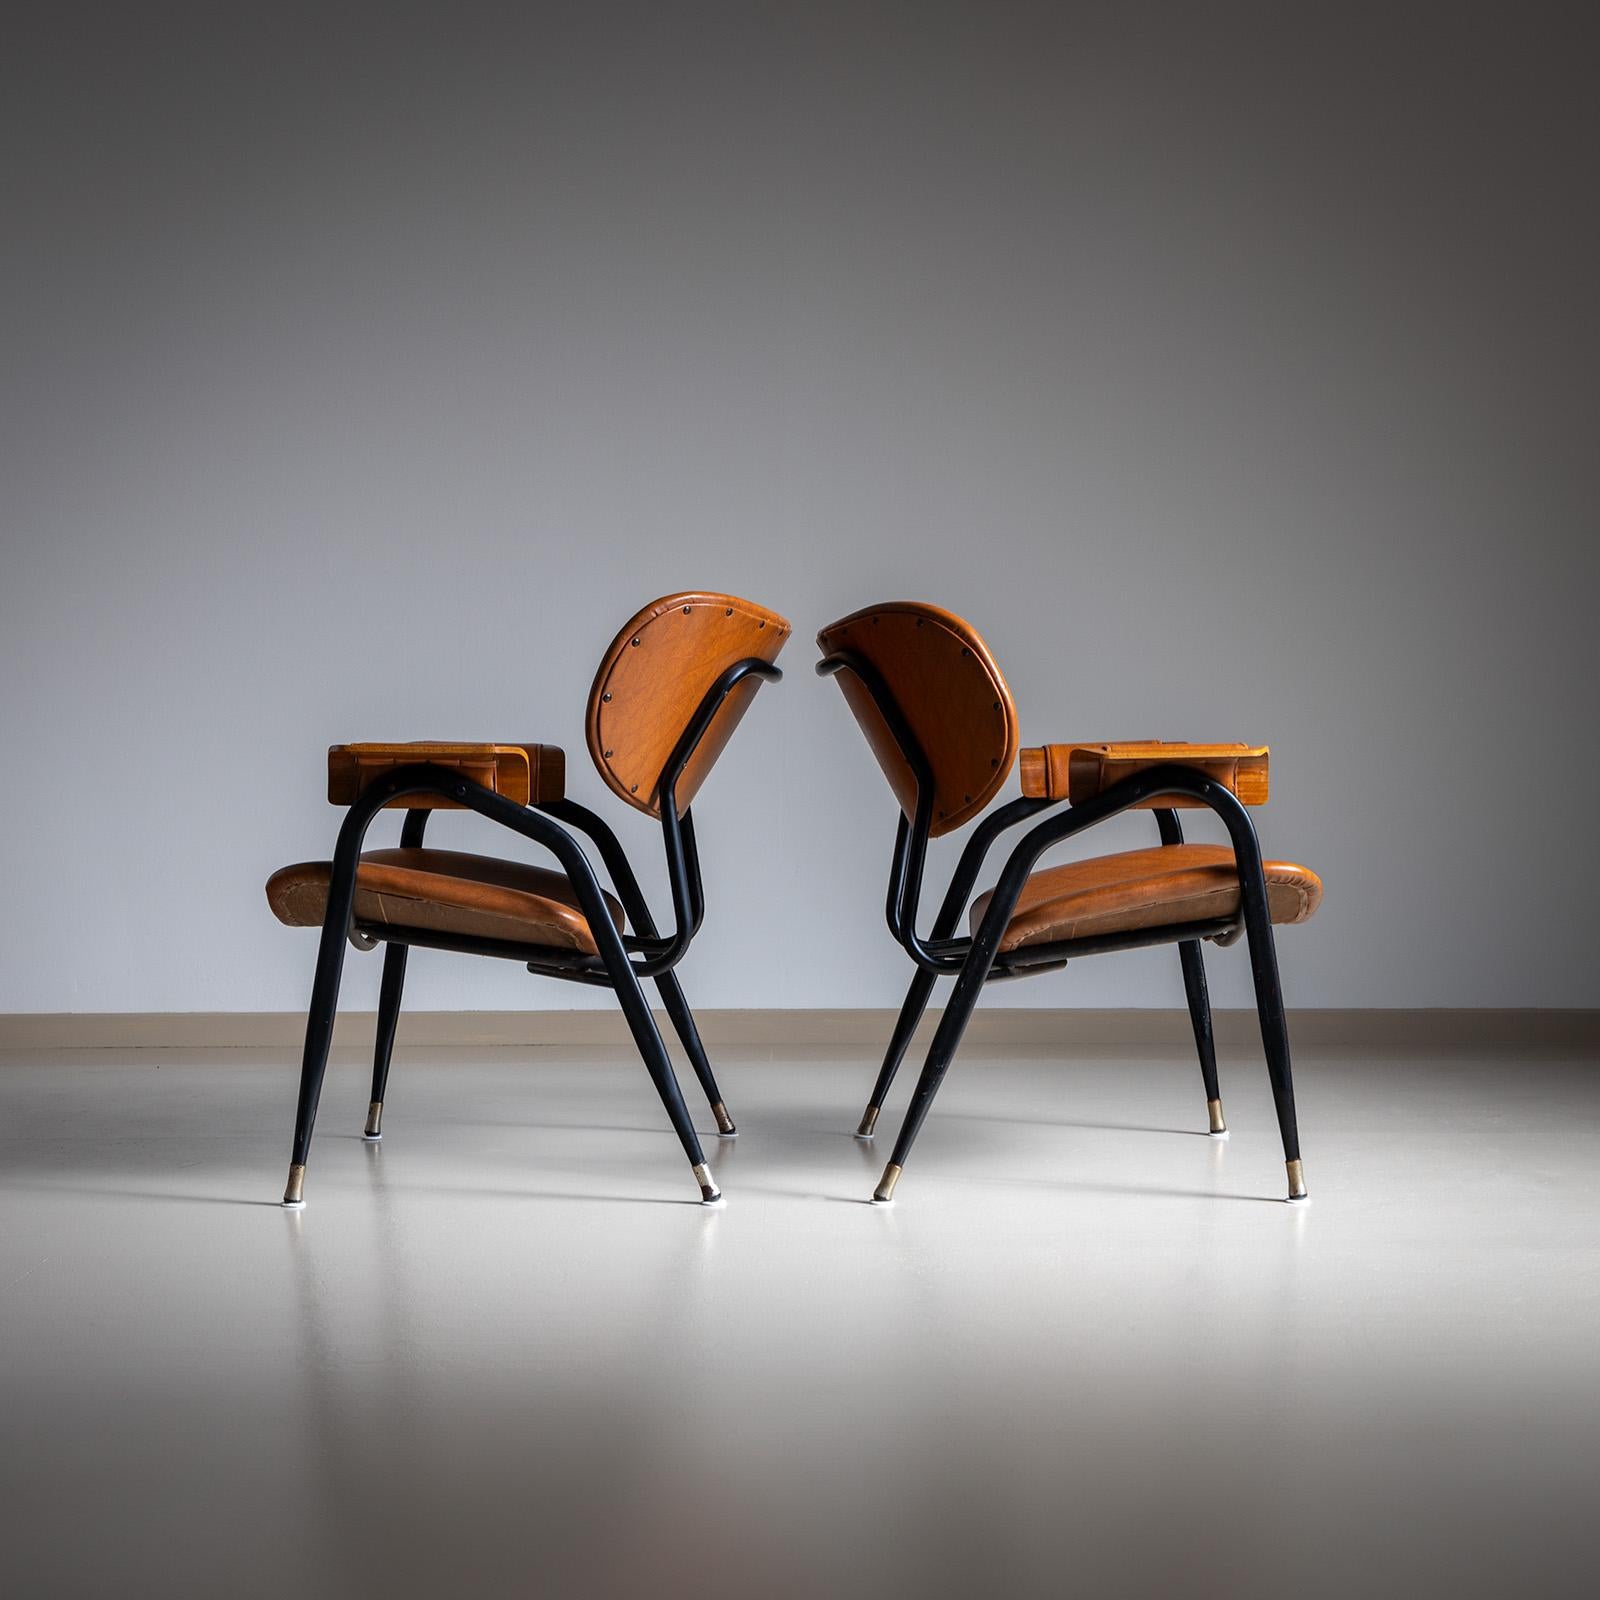 Paar Sessel mit schwarzen Eisenfüßen und ovalen Rückenlehnen und Sitzen mit braunen Kunstlederbezügen. Die Sitze und Rückenlehnen sind rautenförmig verziert. 